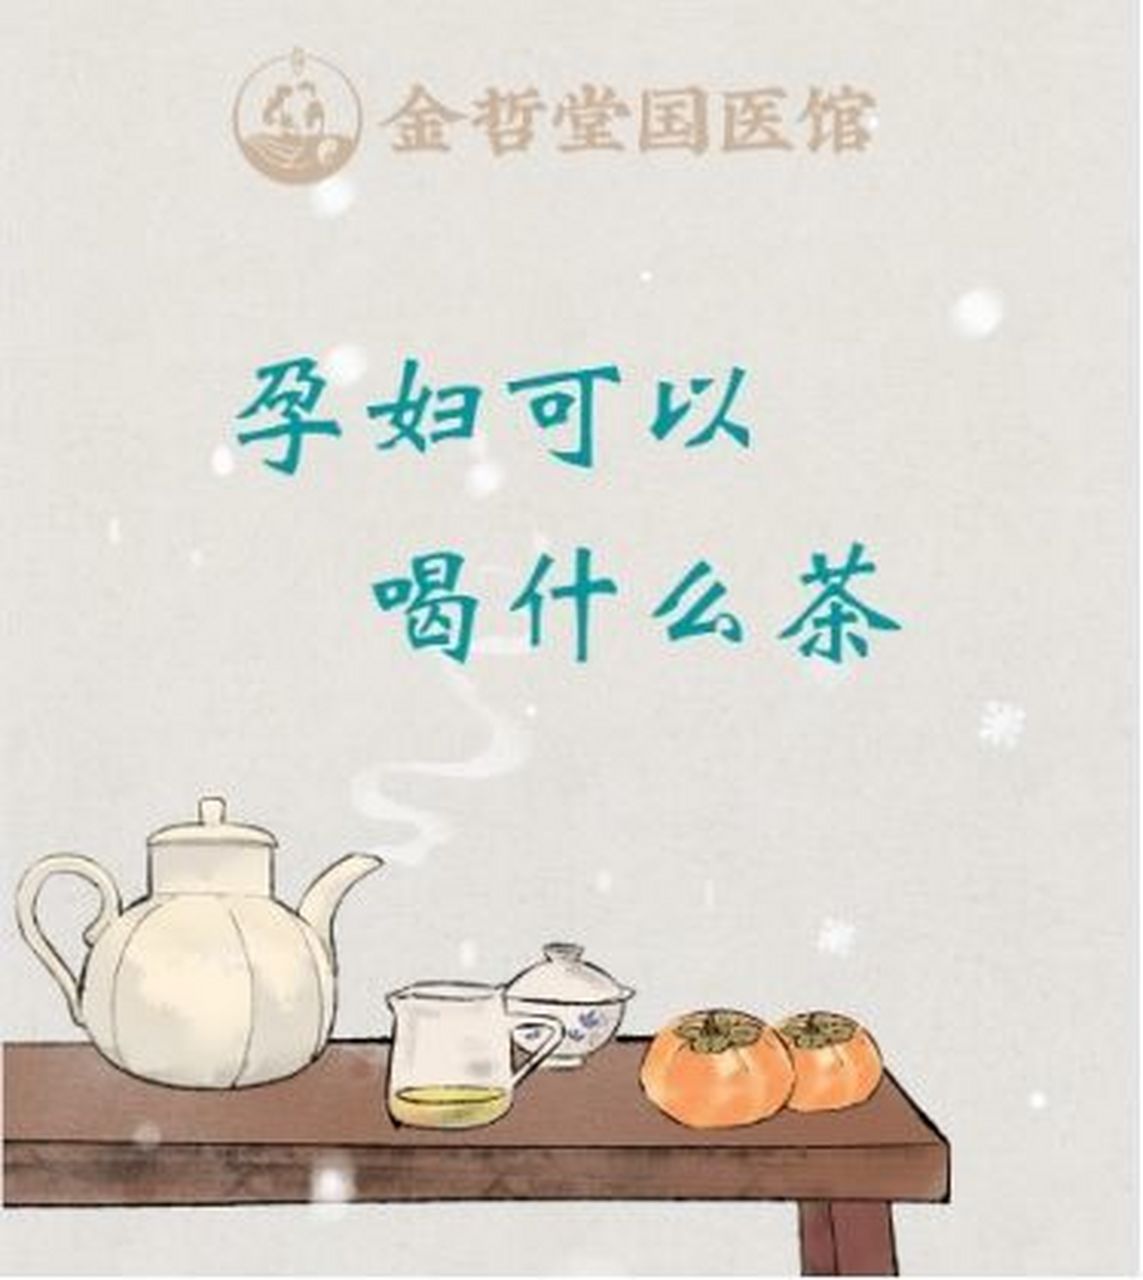 金哲堂国医馆高金哲主任介绍,孕妇是可以喝茶的,但是要有选择性和适量